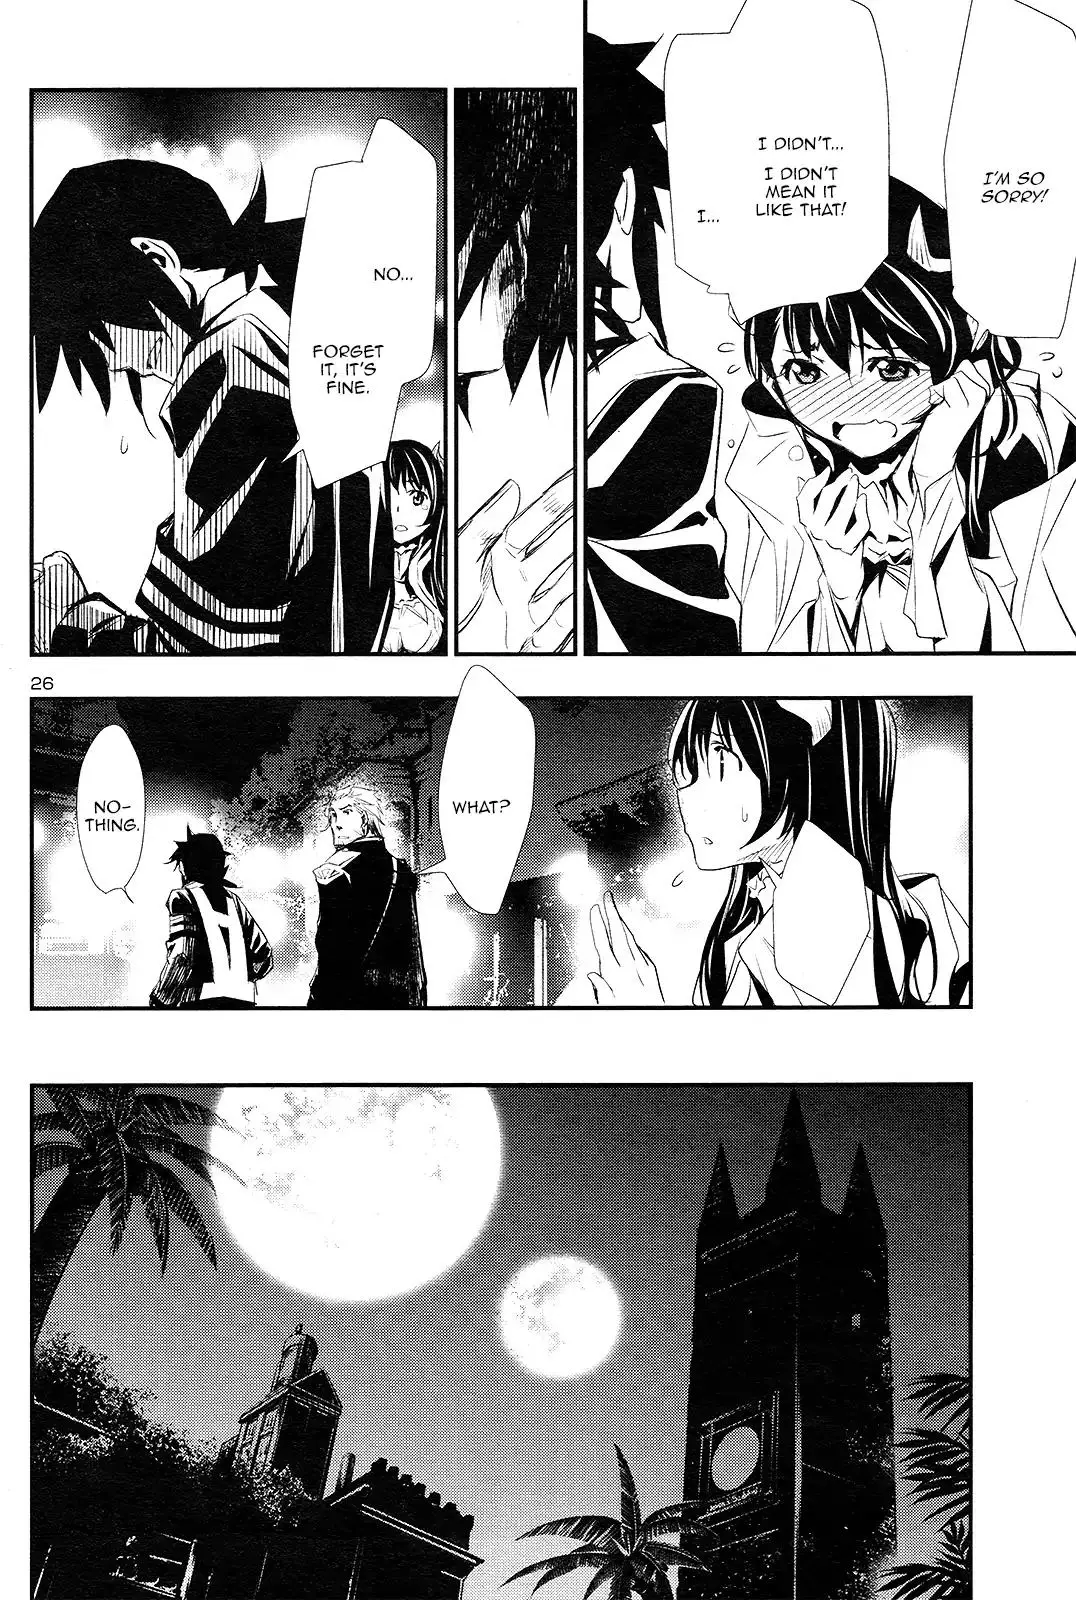 Shinju no Nectar - 1 page 26